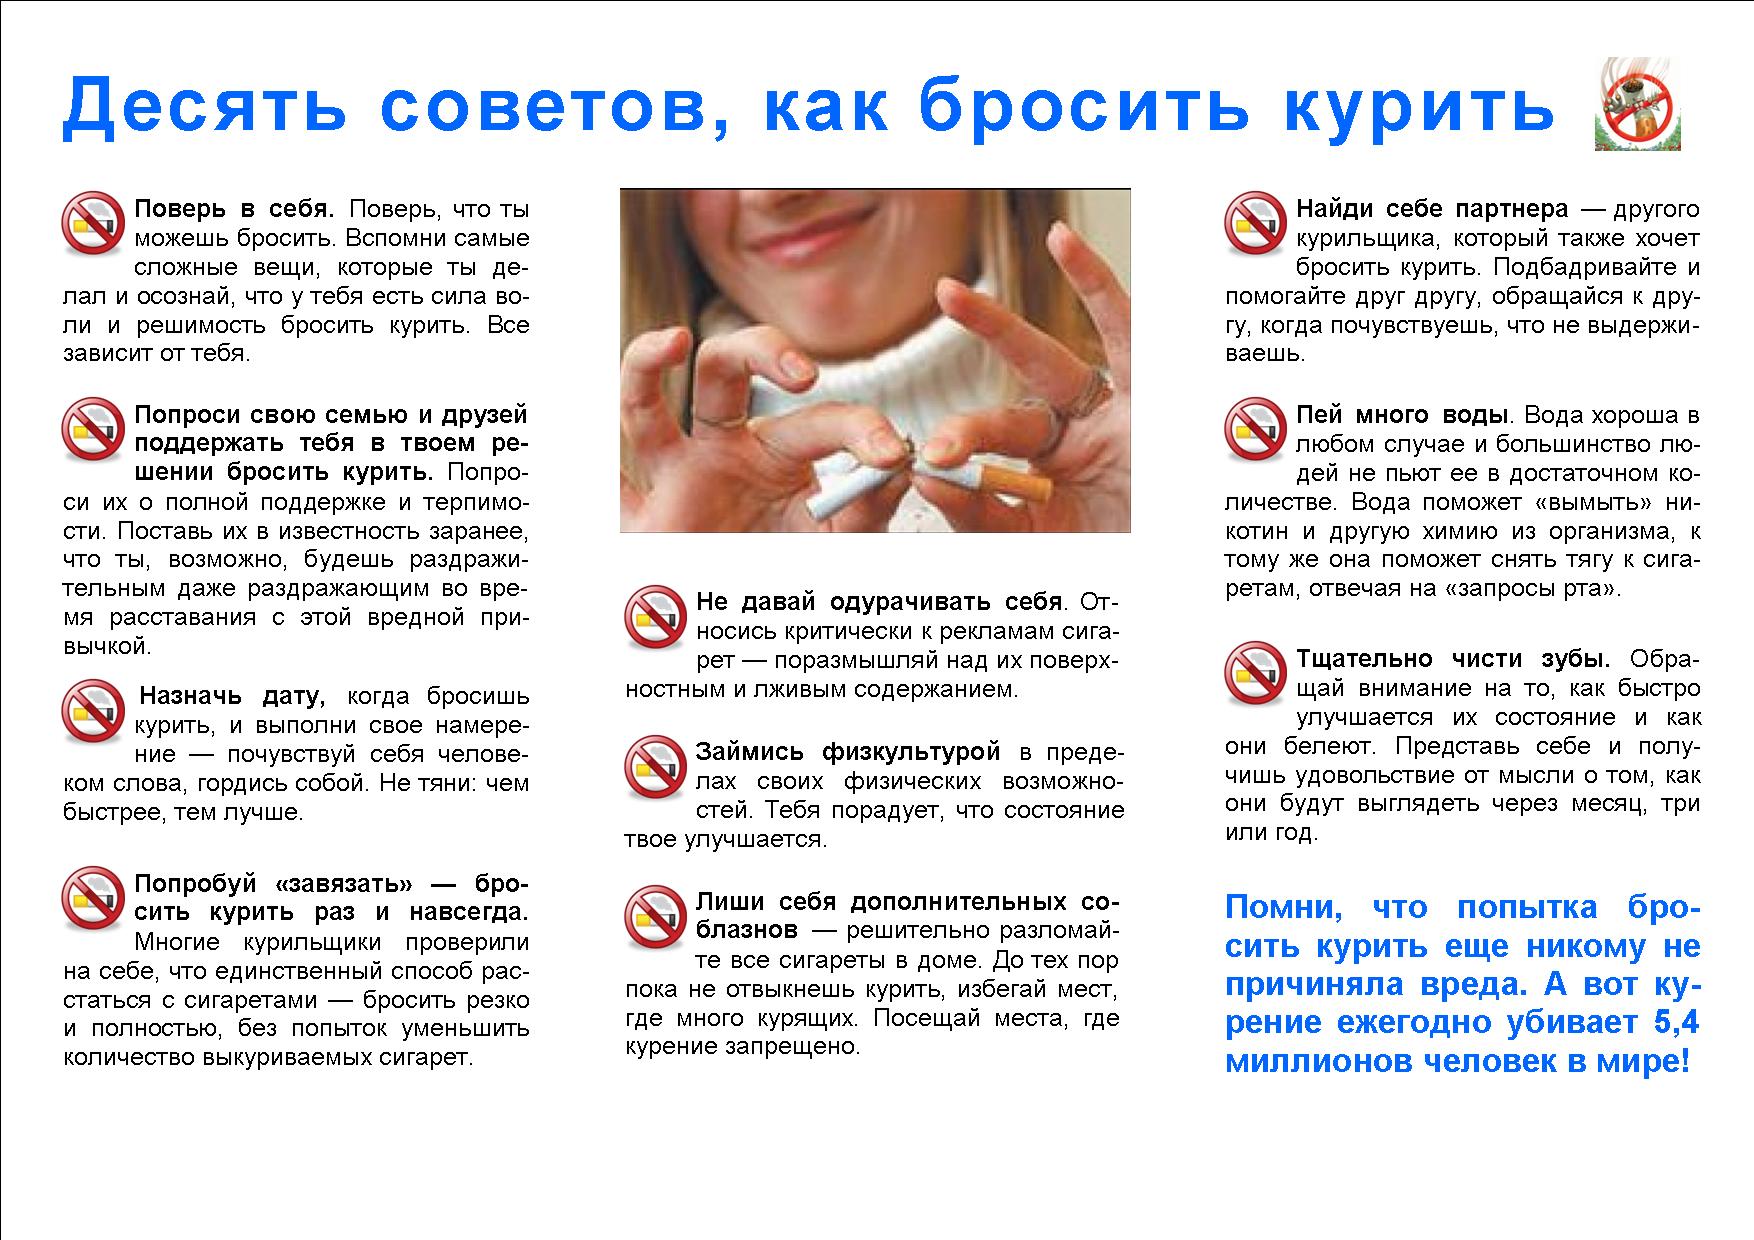 Специалист бросить курить. Как бросить курить действенный способ. Советы как бросить курить. Как бросить курить самостоятельно. Рекомендации как бросить курить.